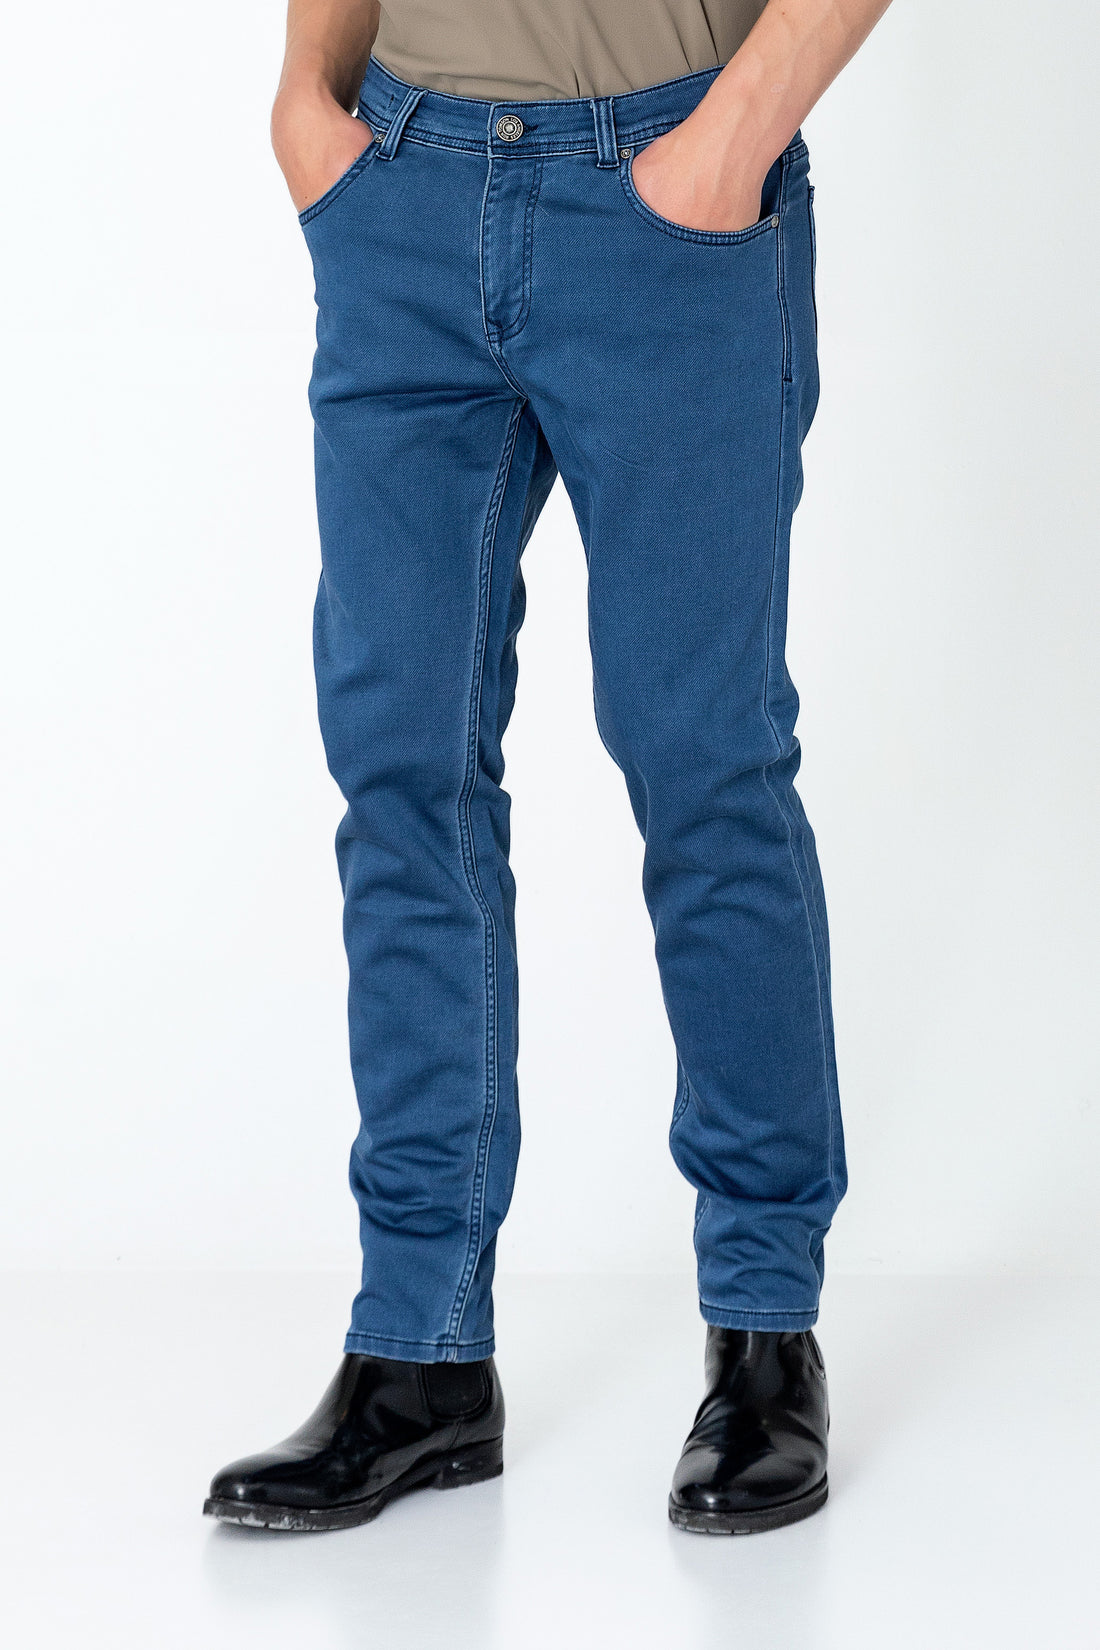 Super Soft 5-pocket Style Pants - Indigo